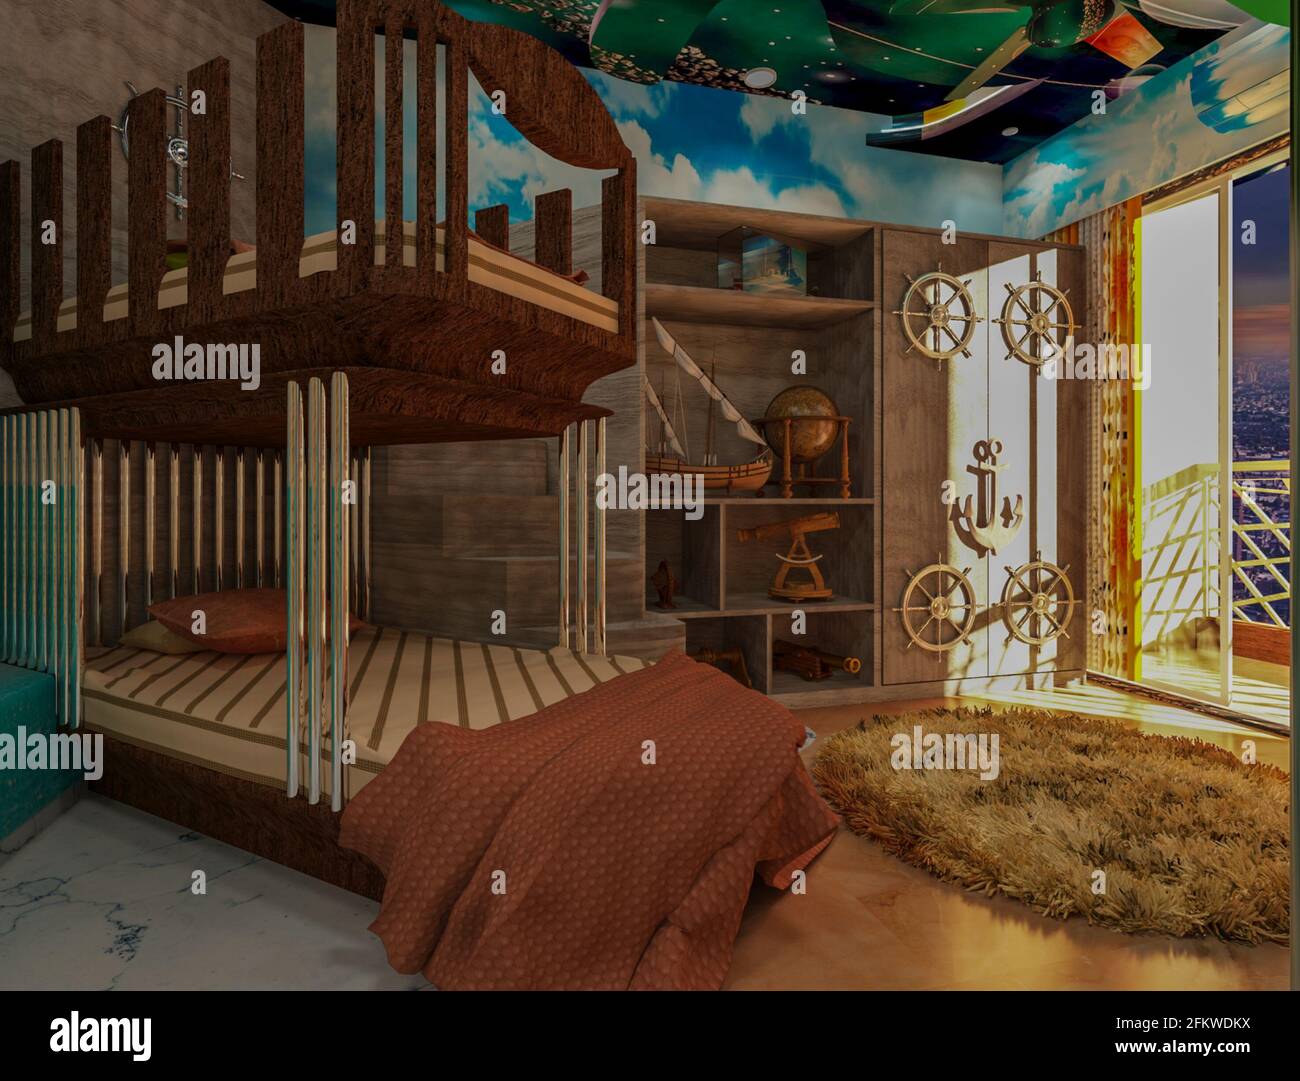 Chambre d'enfant à thème de bateau en 3D. Intérieur à thème pour les enfants. Banque D'Images